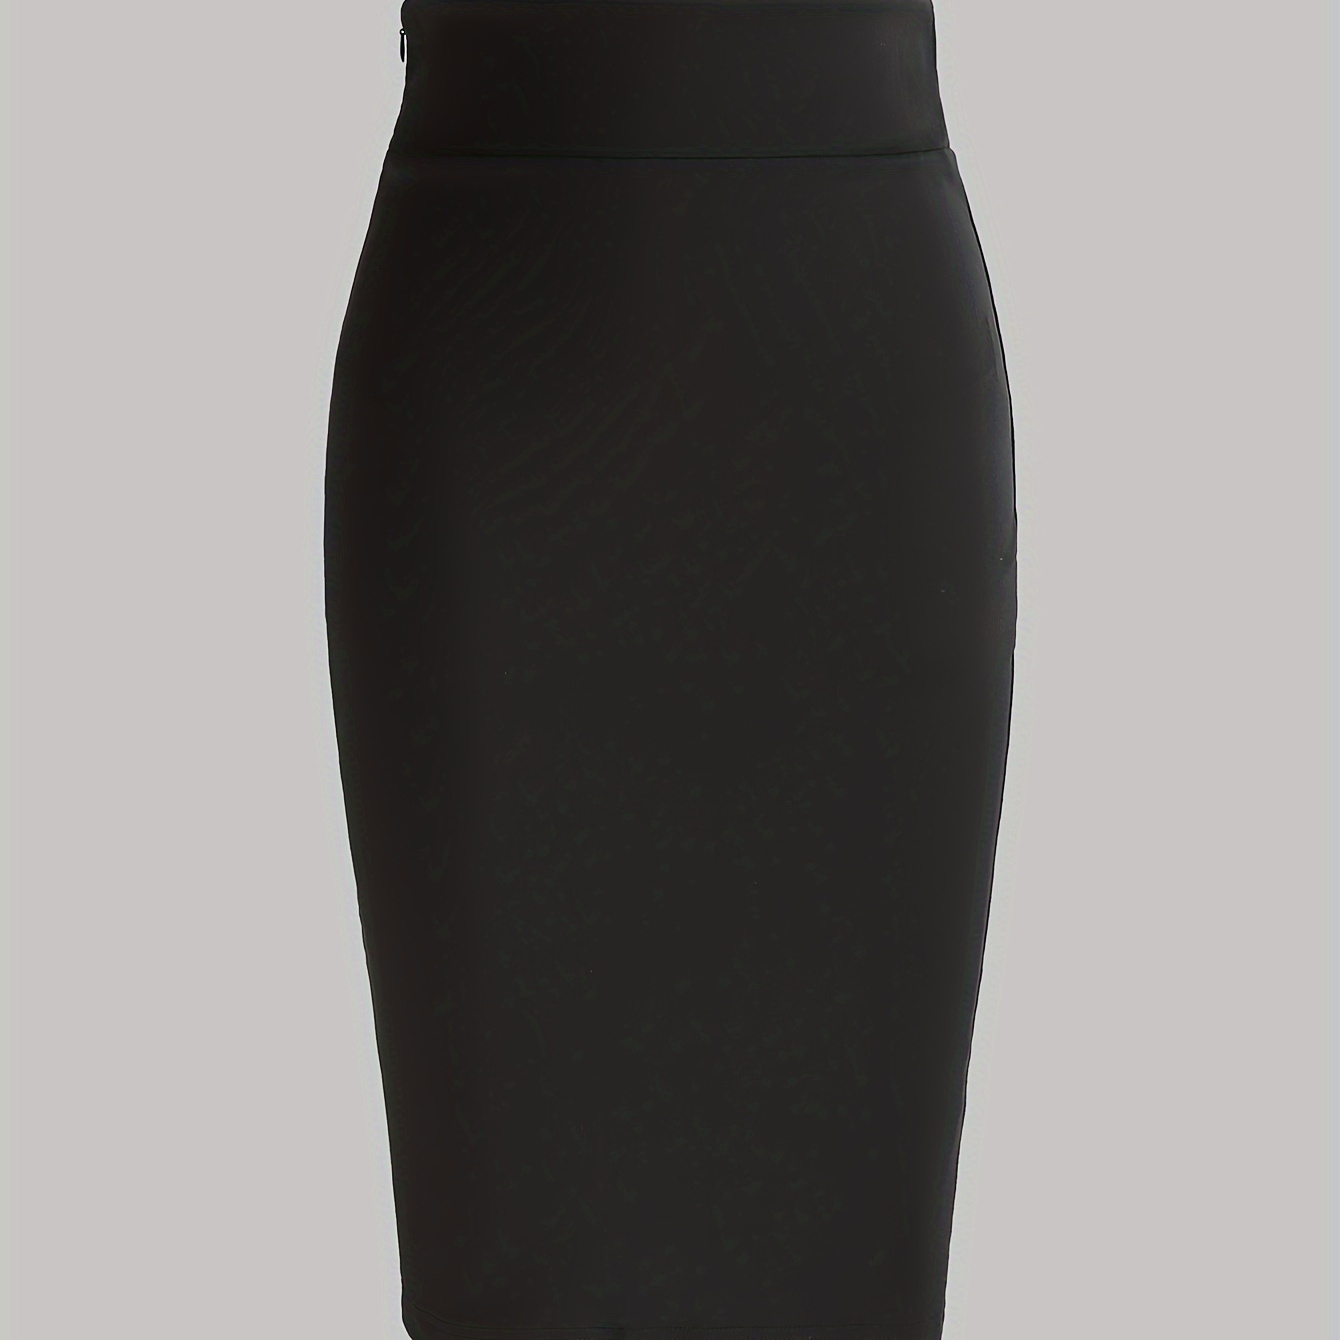 

High Waist Bodycon Skirt, Elegant Solid Knee Length Sheath Skirt For Spring & Summer, Women's Clothing